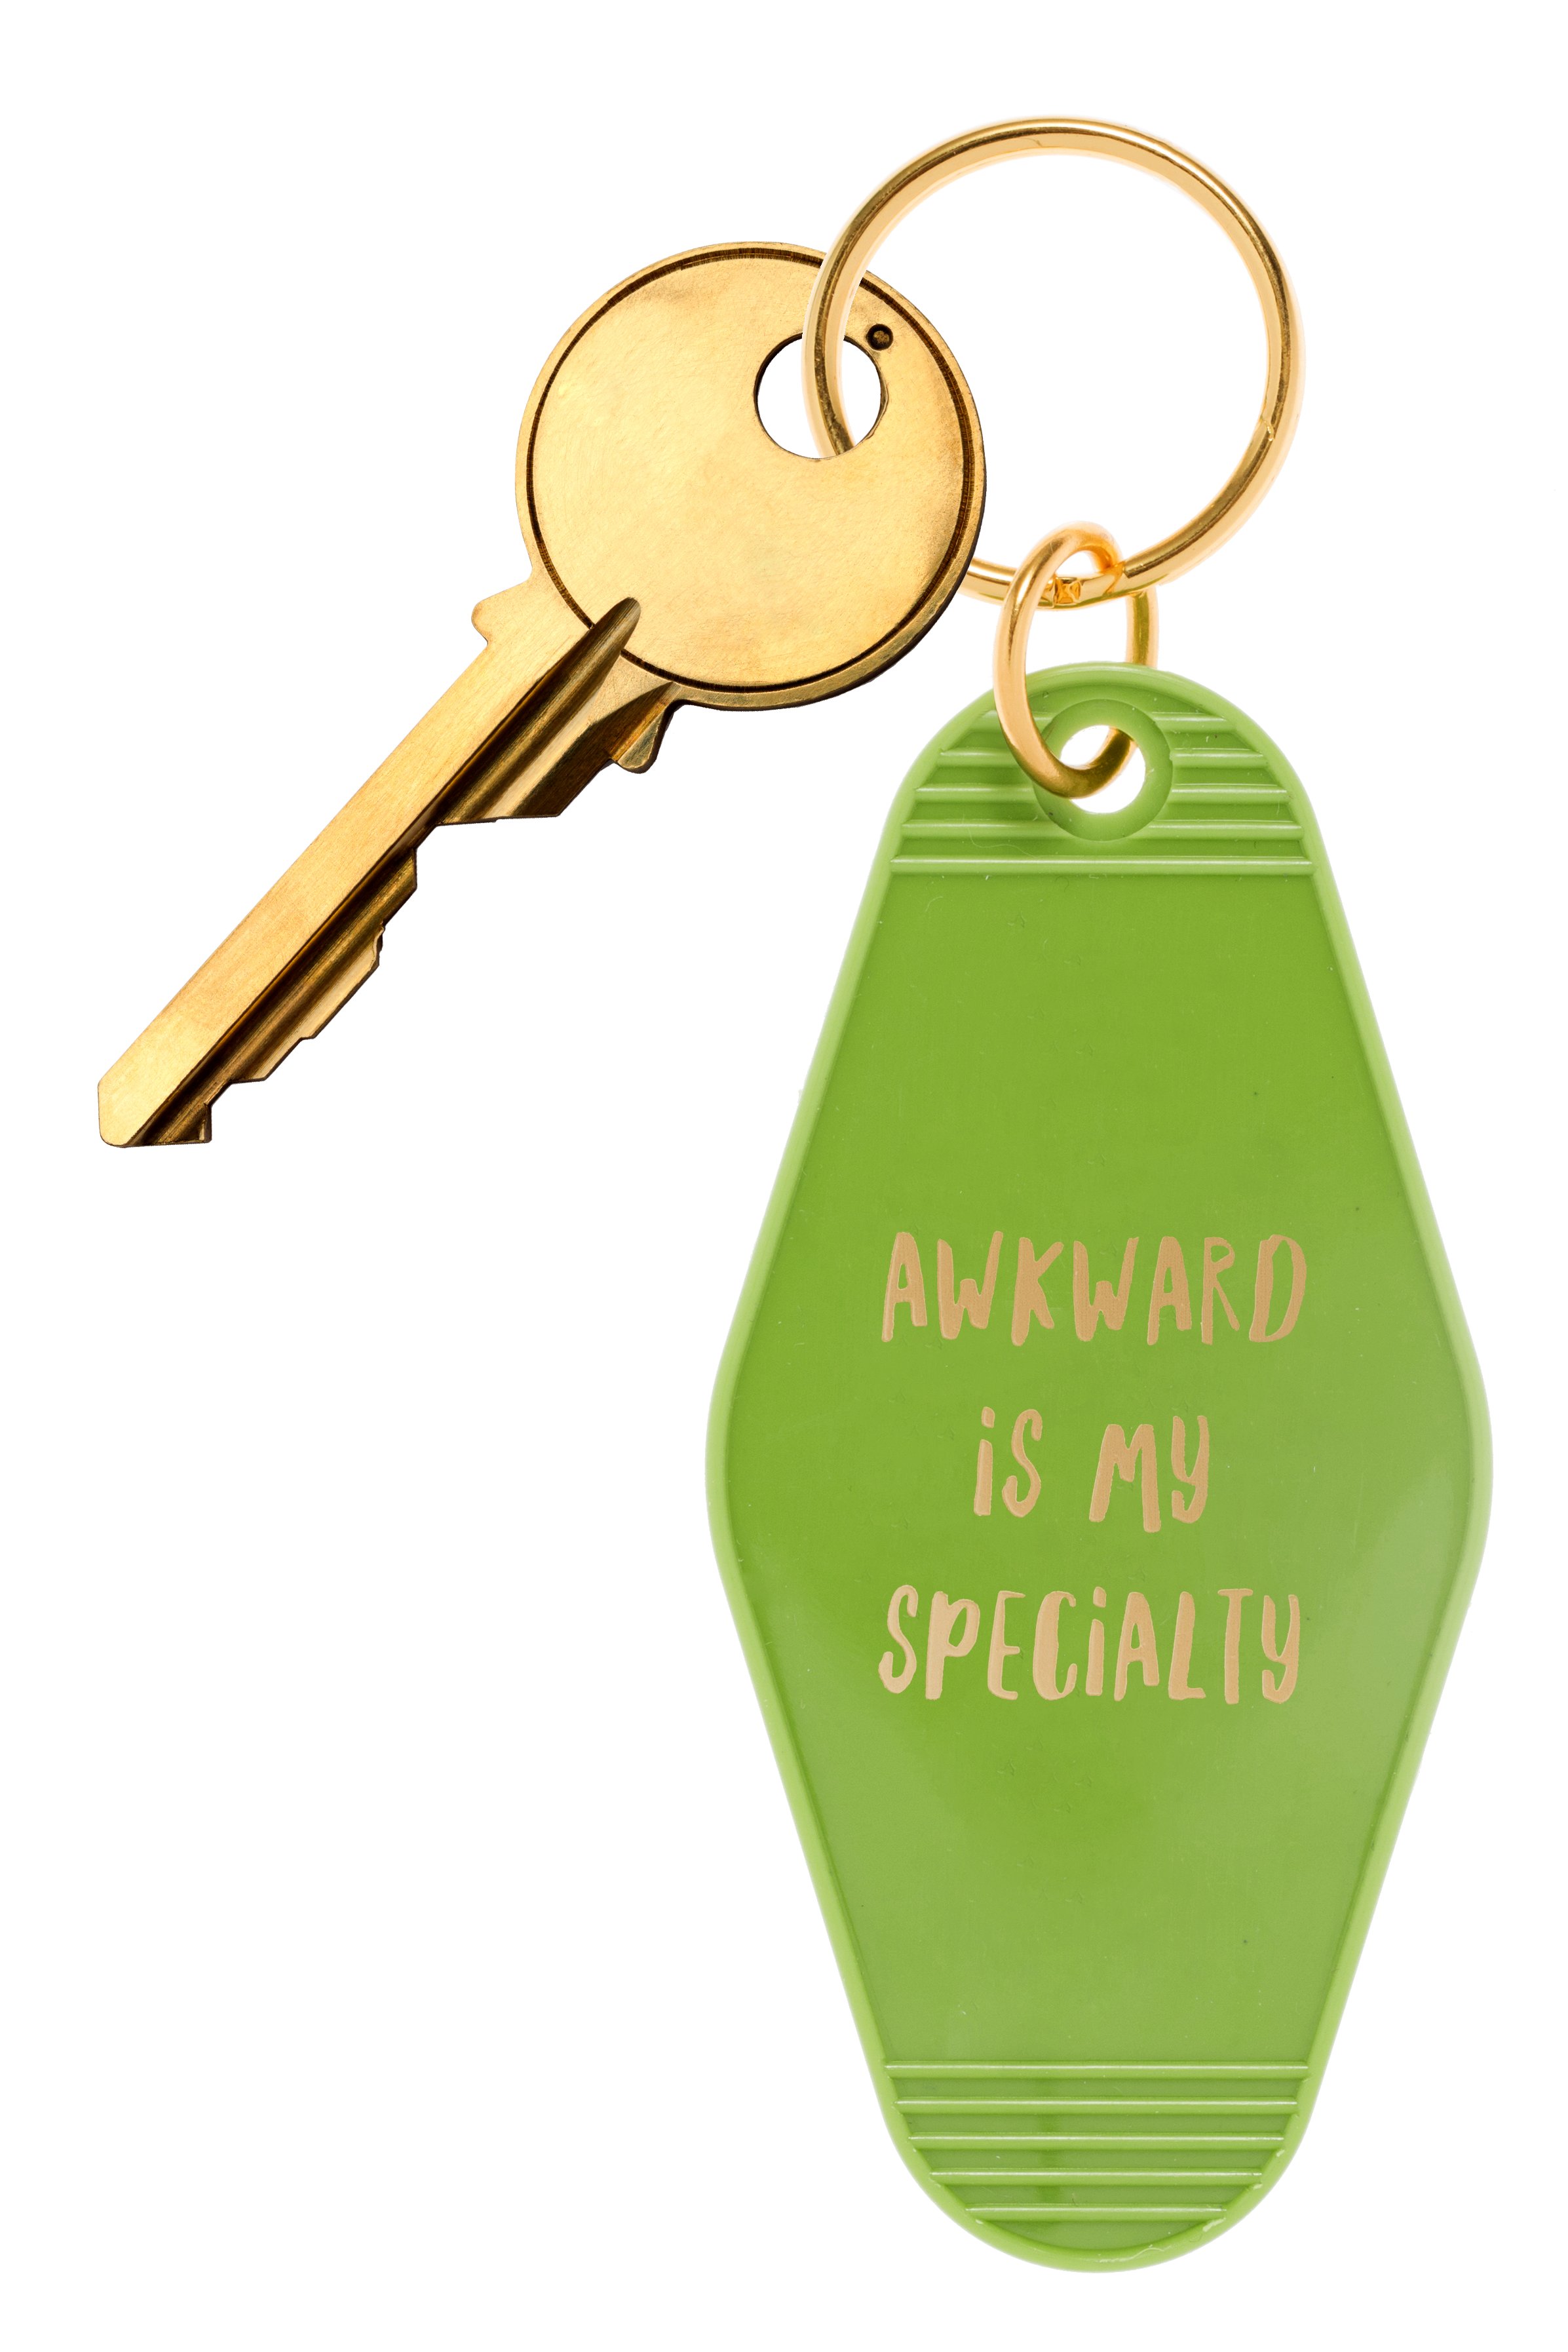 *Retro Motel Style Keychain - "Awkward is my Specialty"